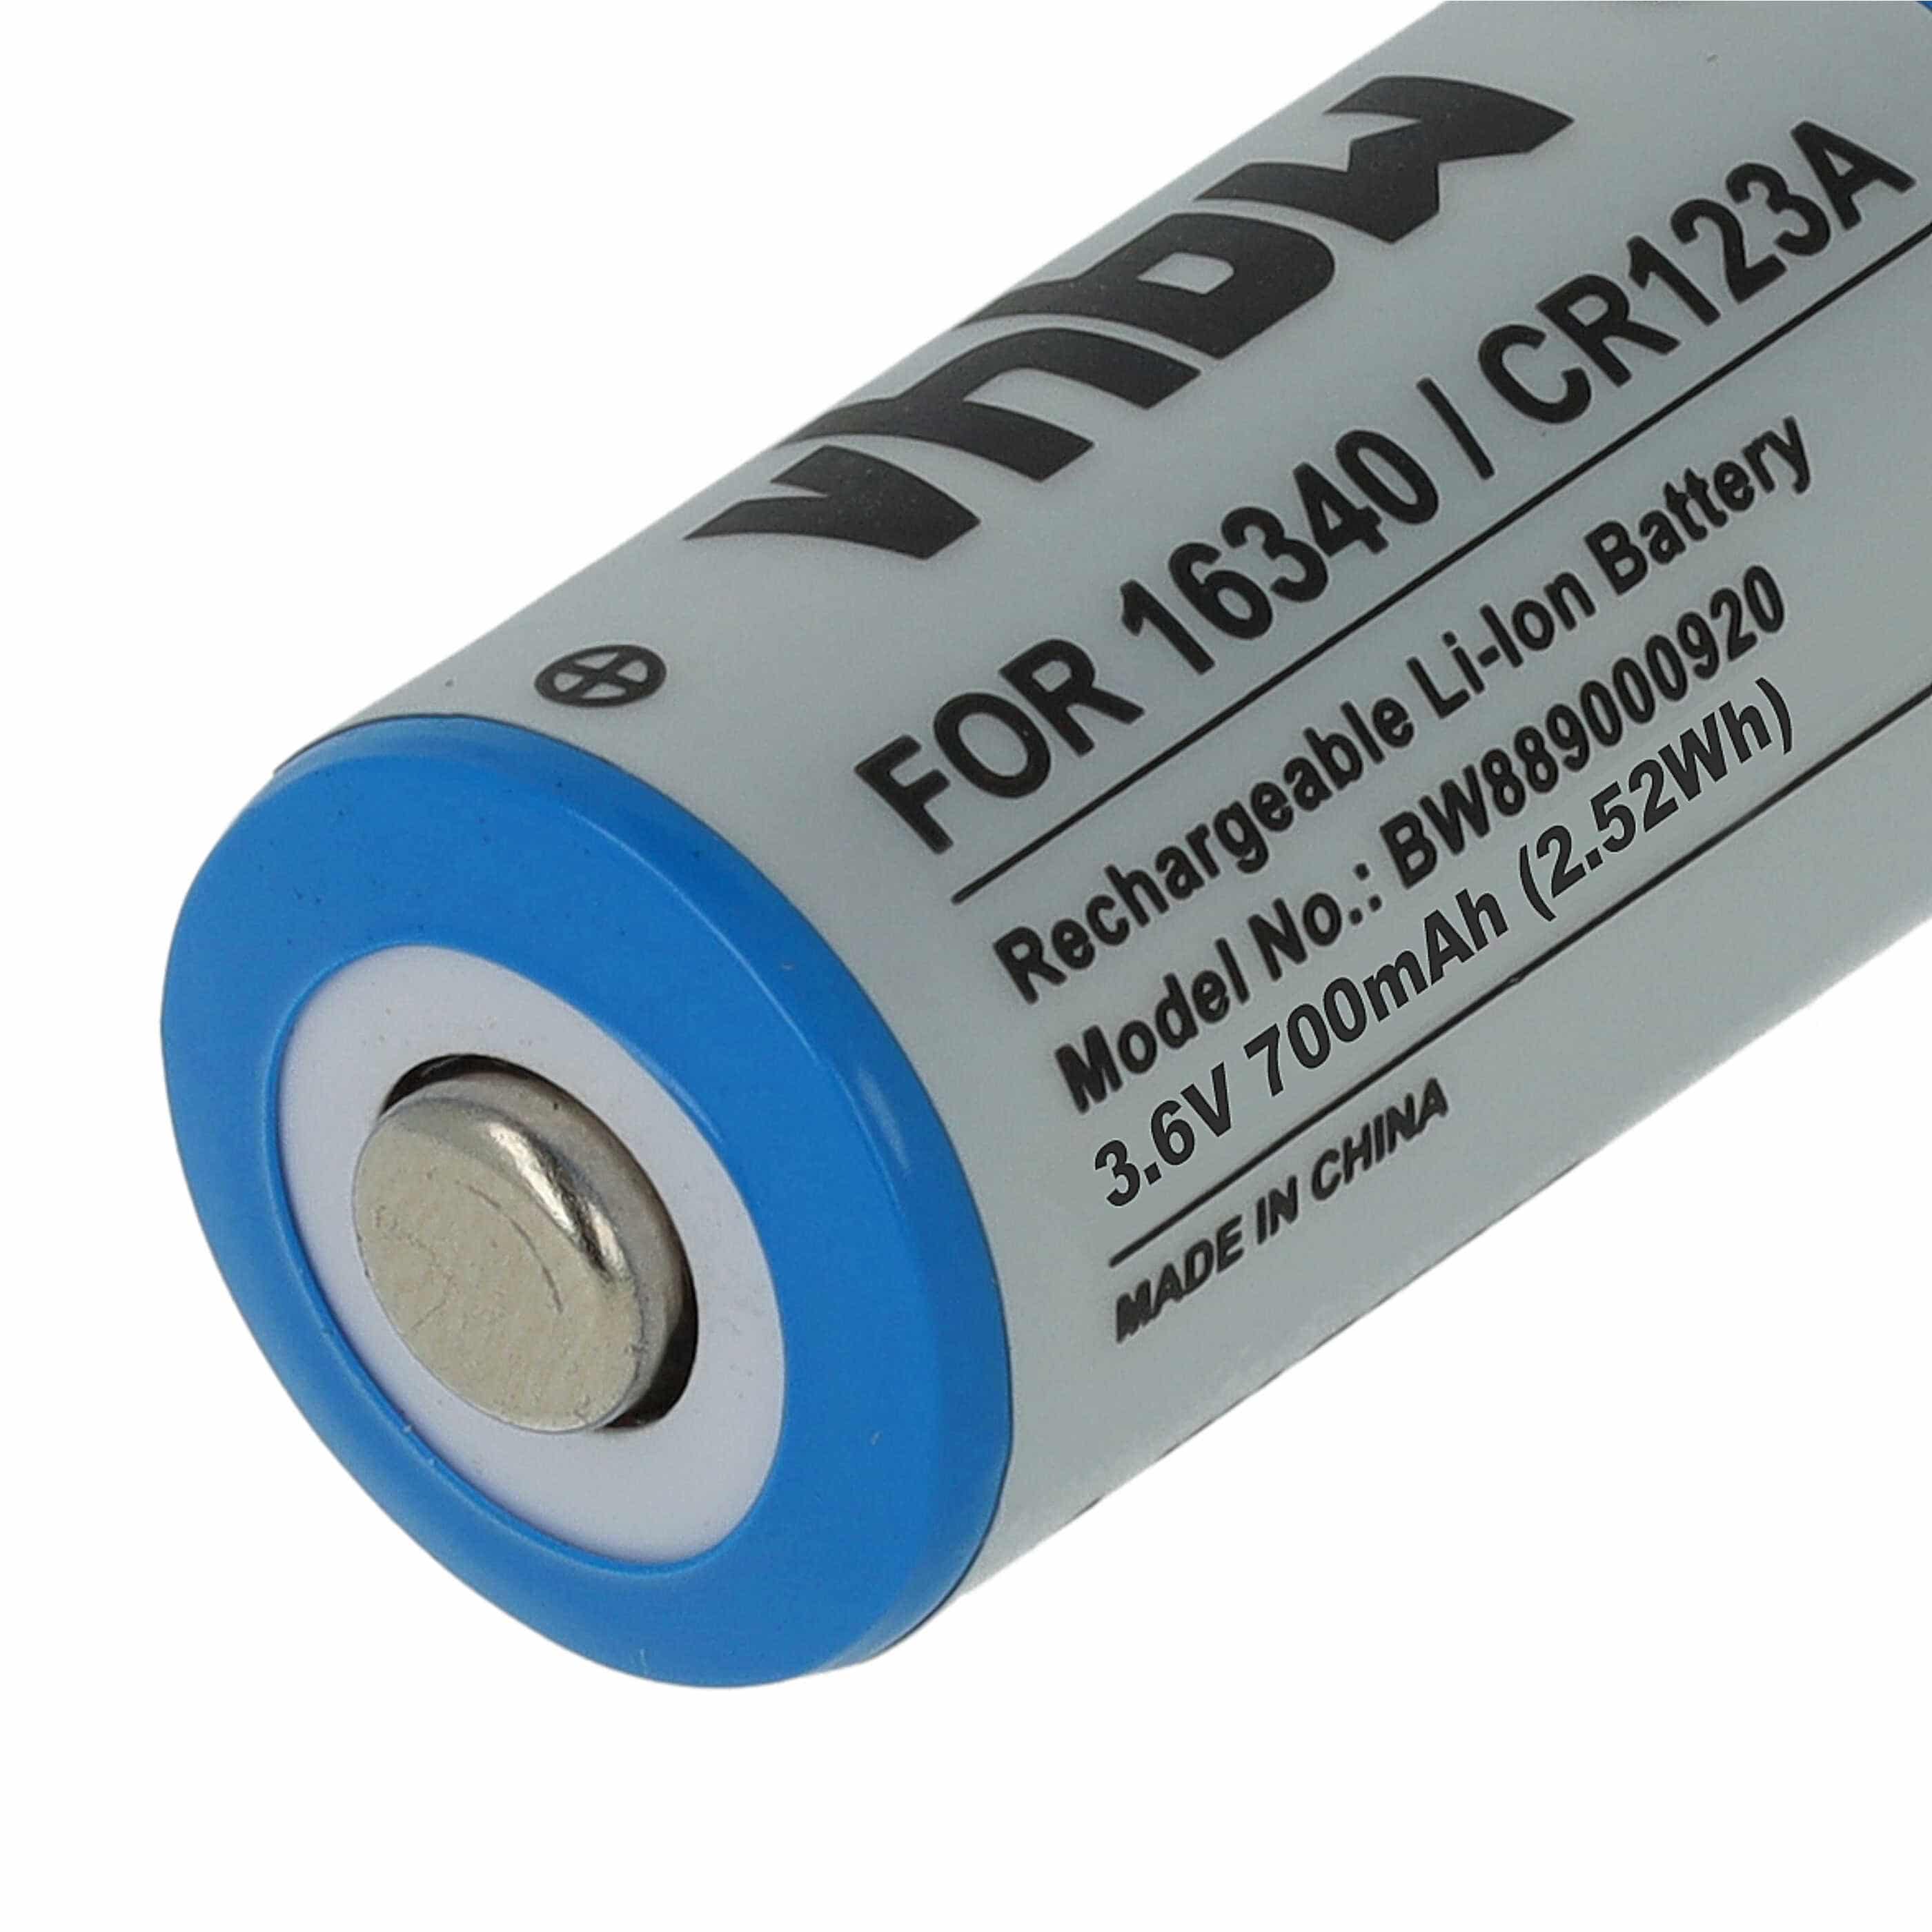 Batterie remplace 16340, DL123A, CR123R, CR17335, EL123AP, CR17345, CR123A - 700mAh 3,6V Li-ion, 1x cellules